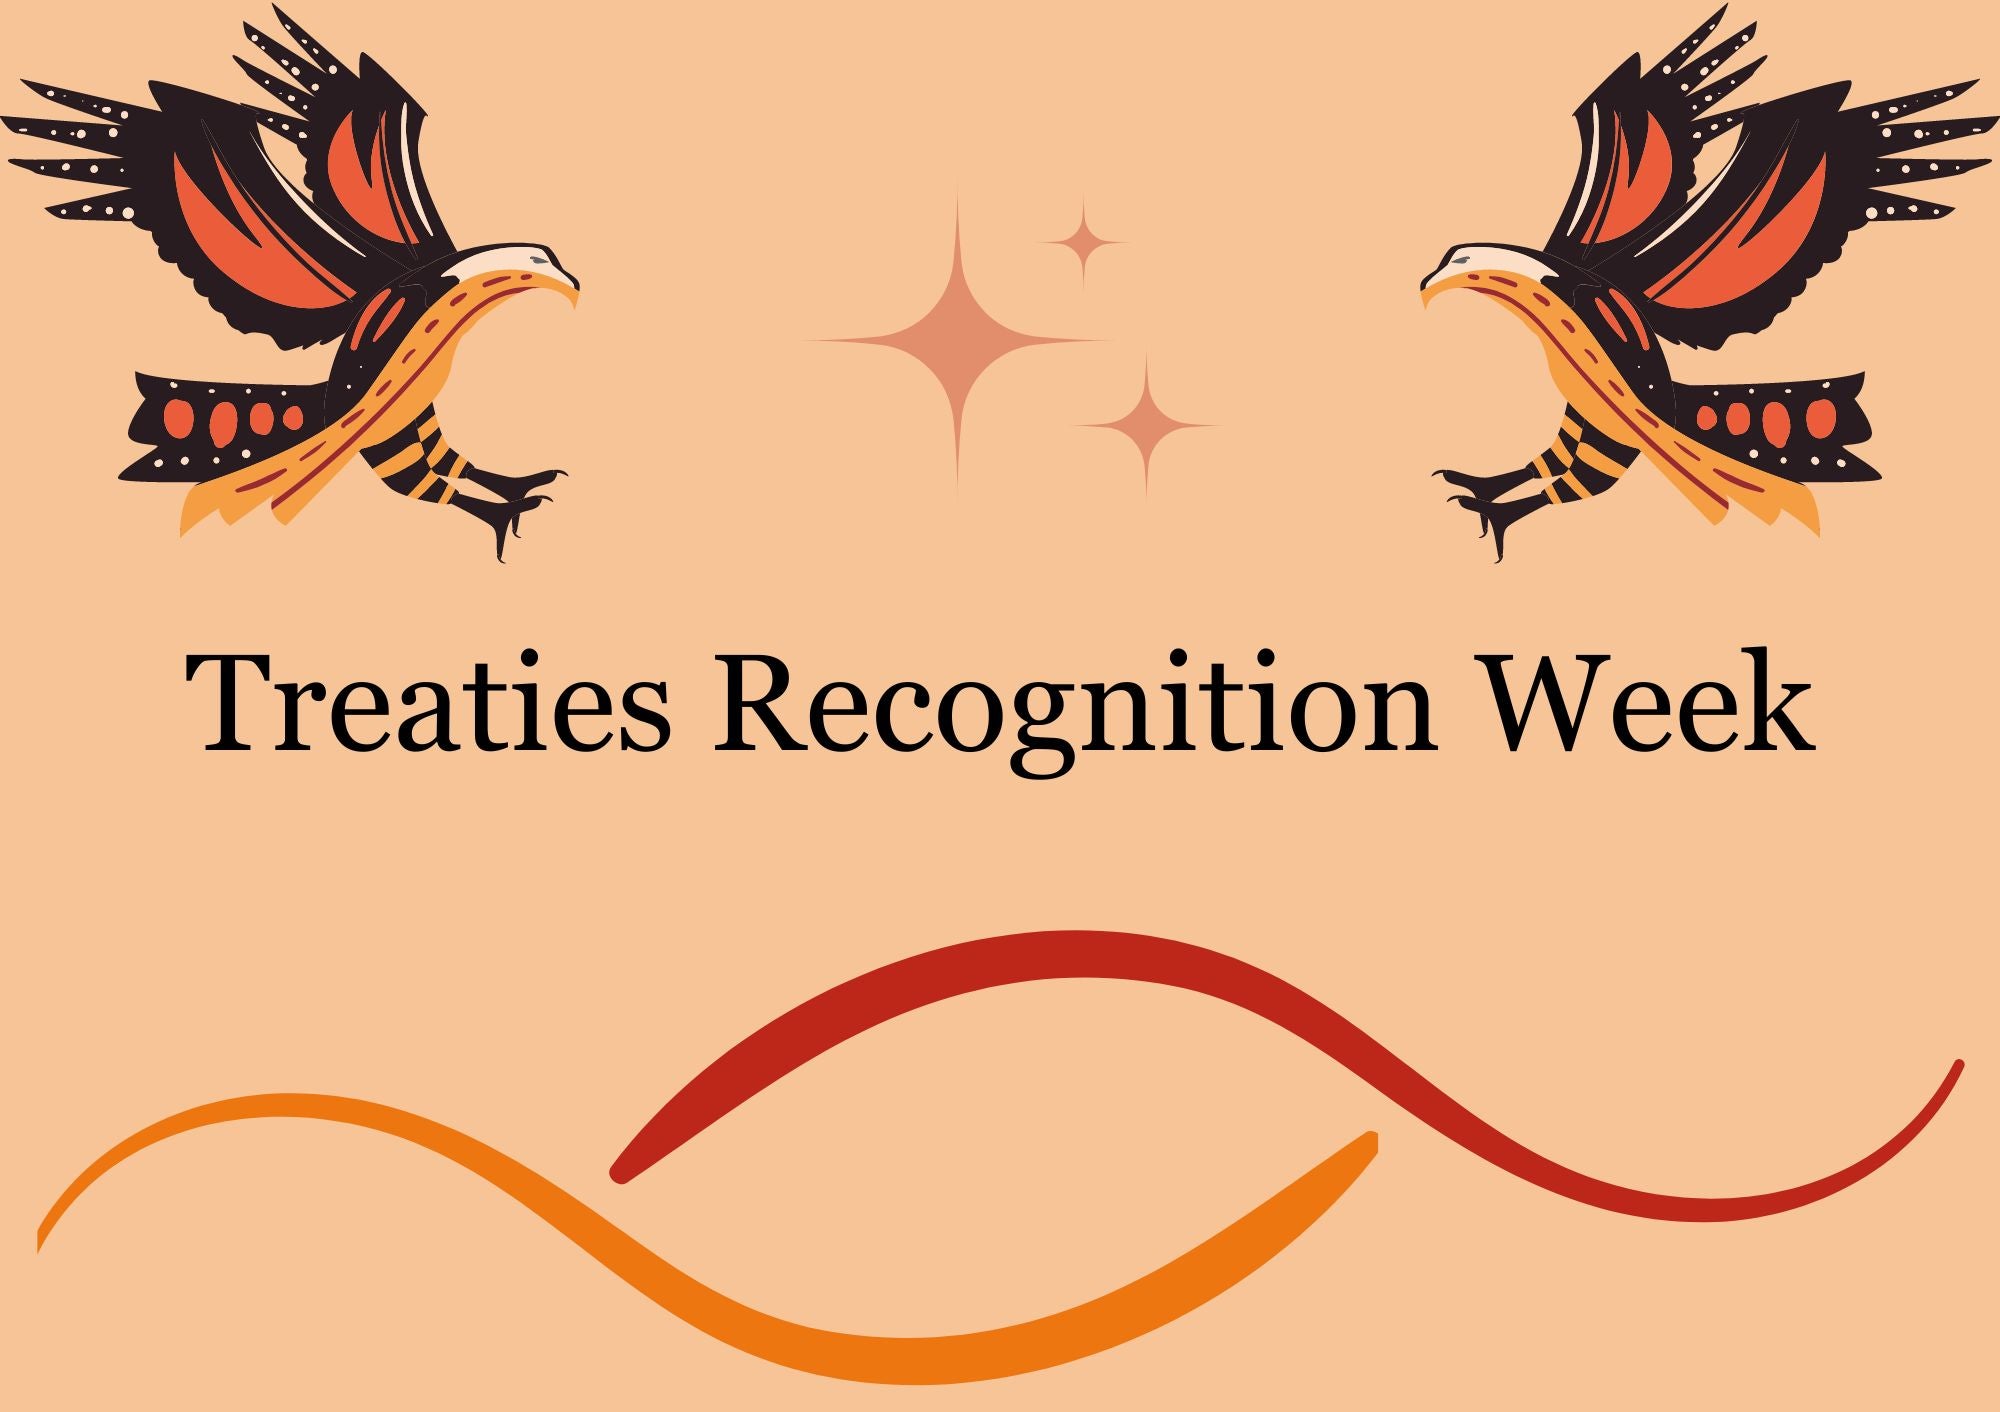 Treaties Recognition Week